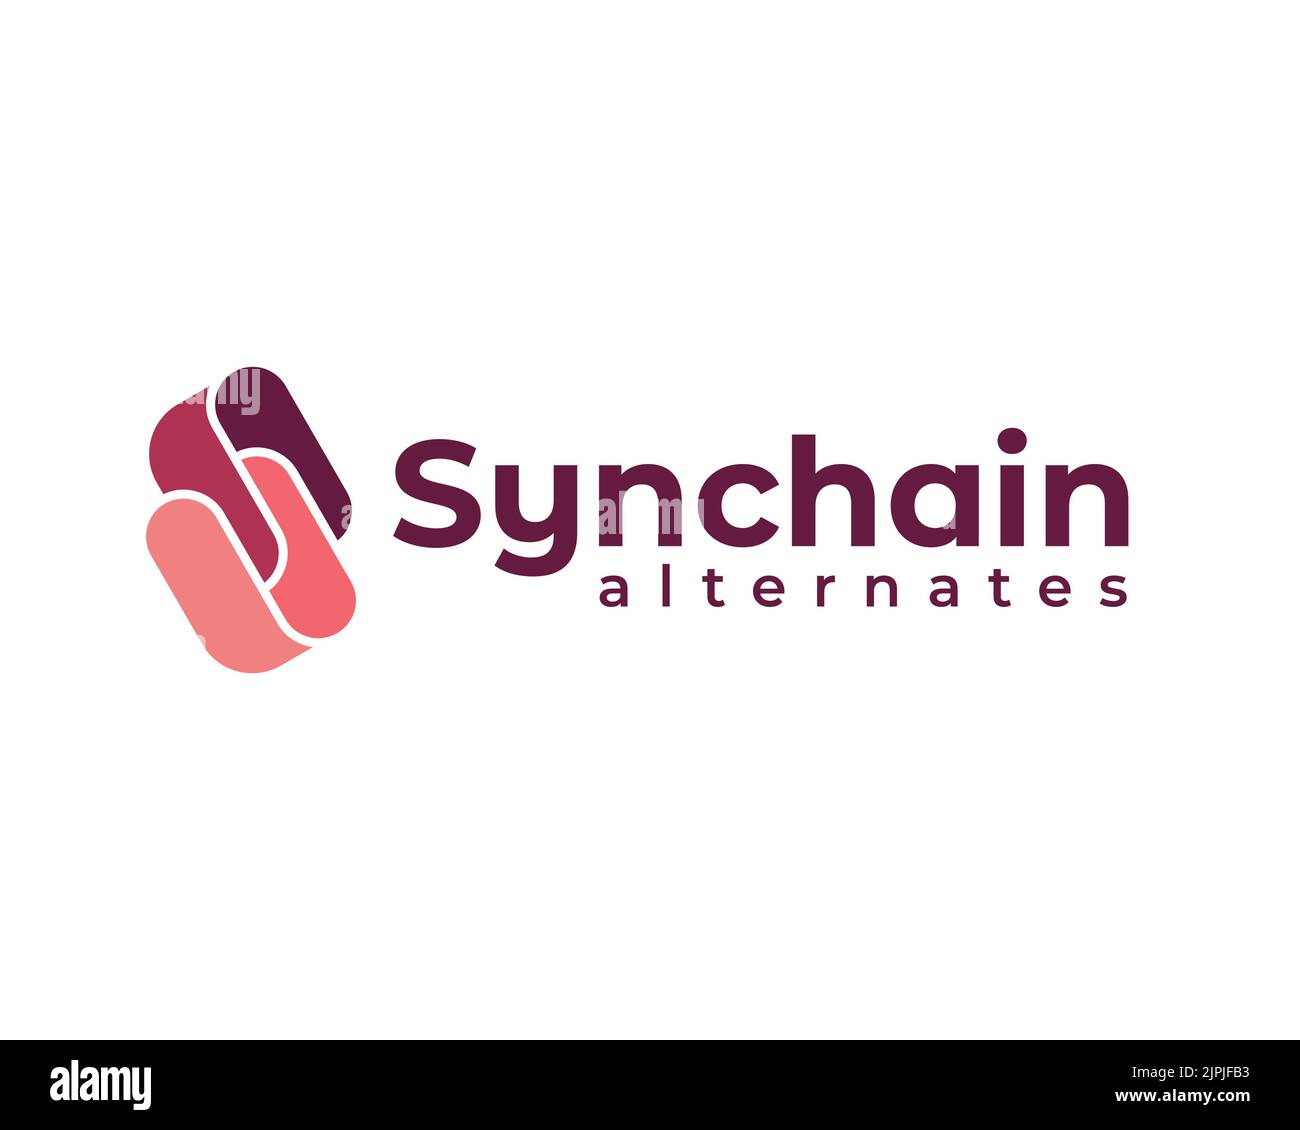 Ein Vektor eines rosa Logo Idee für Synchain wechselt Unternehmen auf dem weißen Hintergrund Stock Vektor